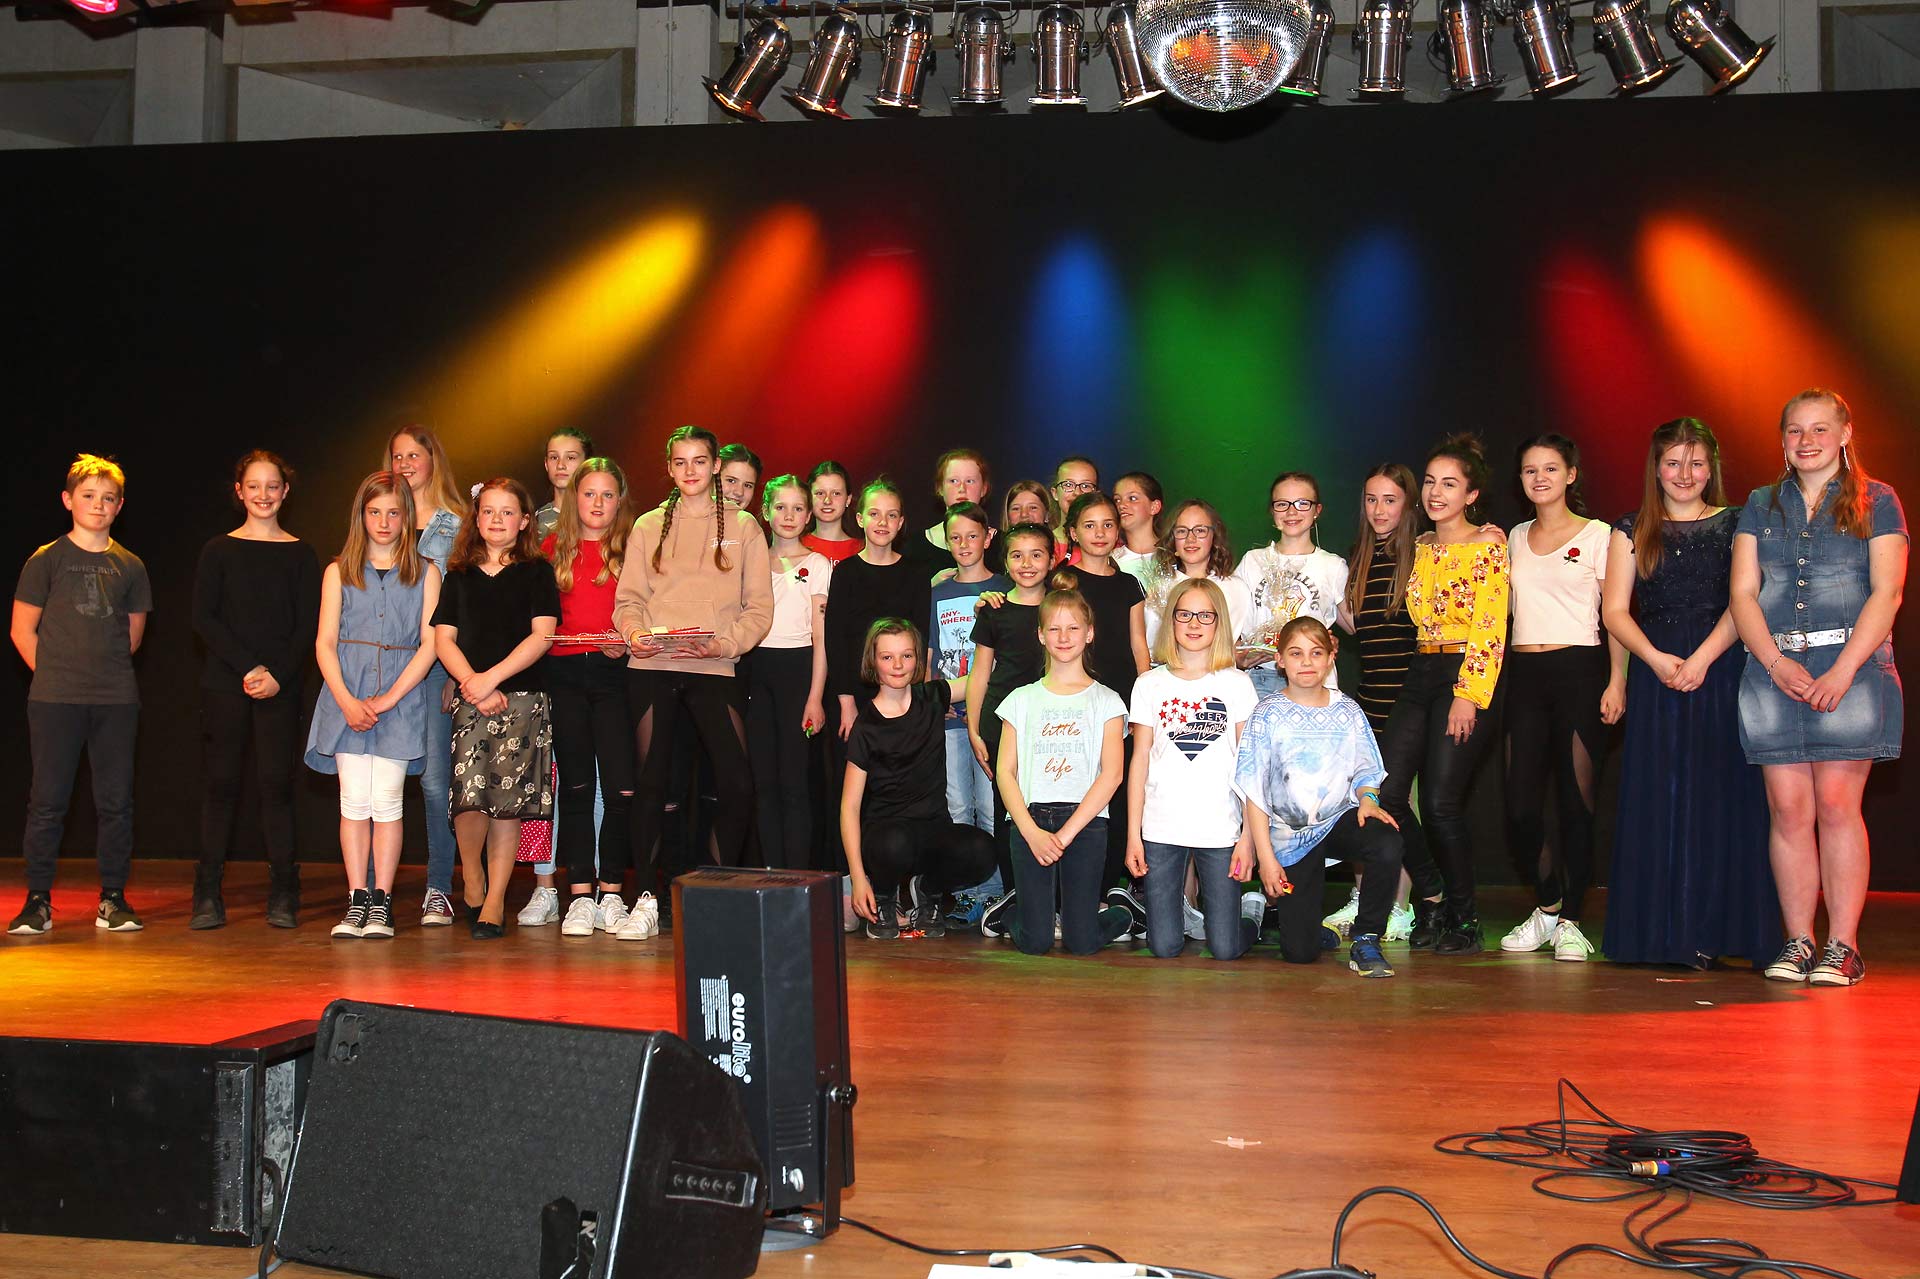 Talenttag am Dietrich-Bonhoeffer-Gymnasium: Aula wird zur Showbühne